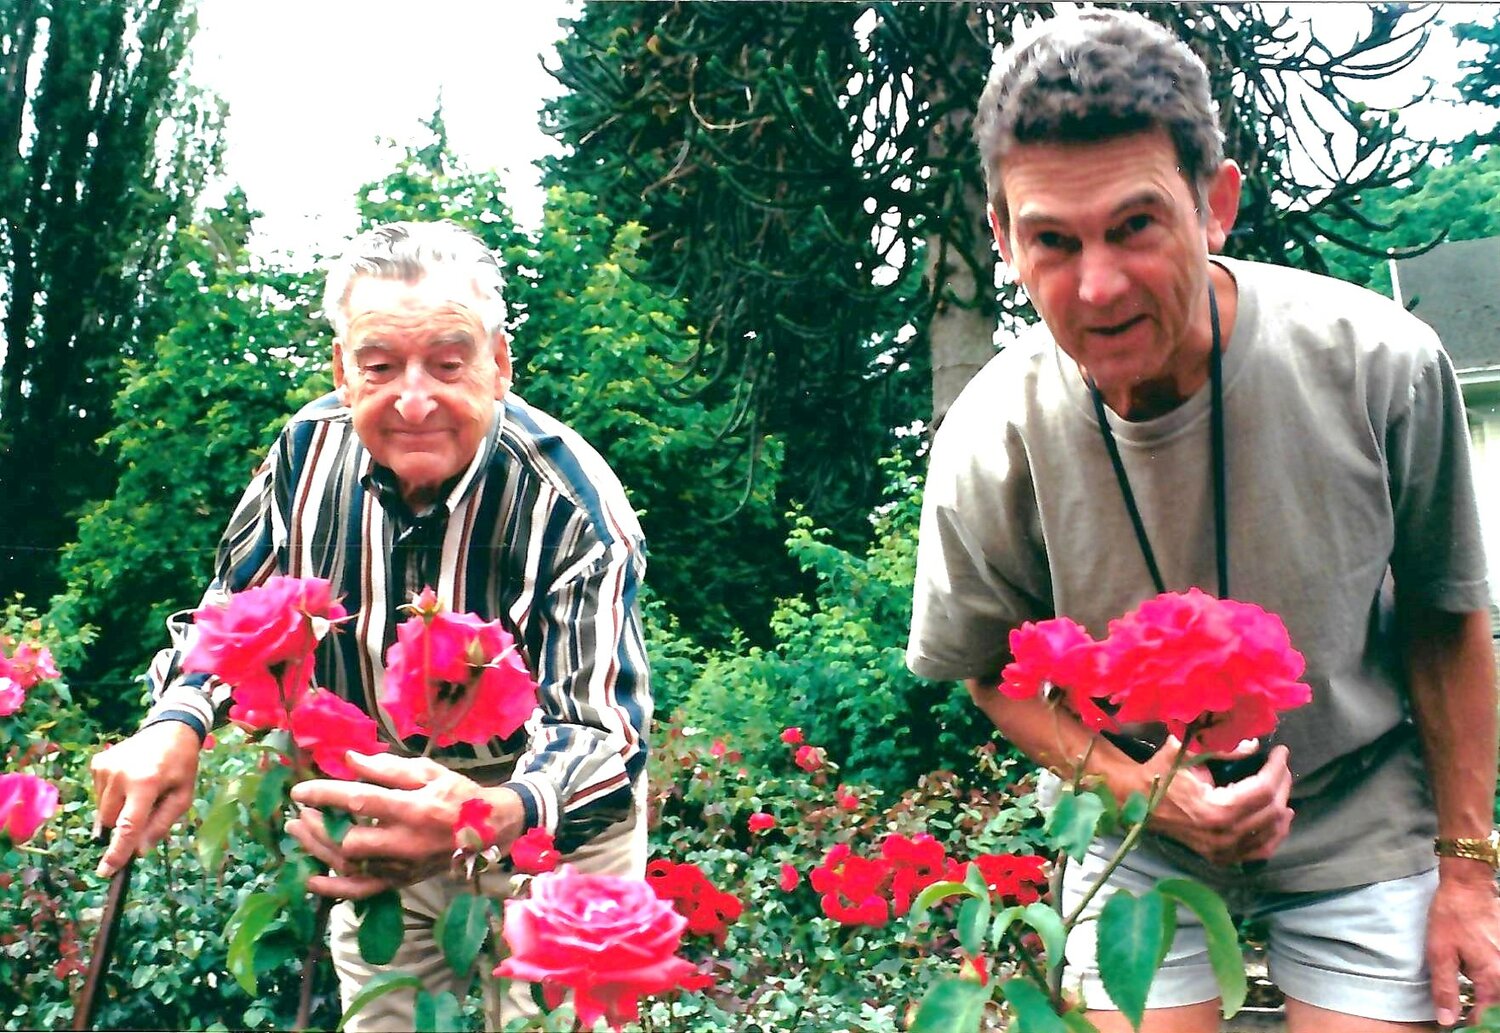 Gary and his dad at the Centennial Rose Garden.